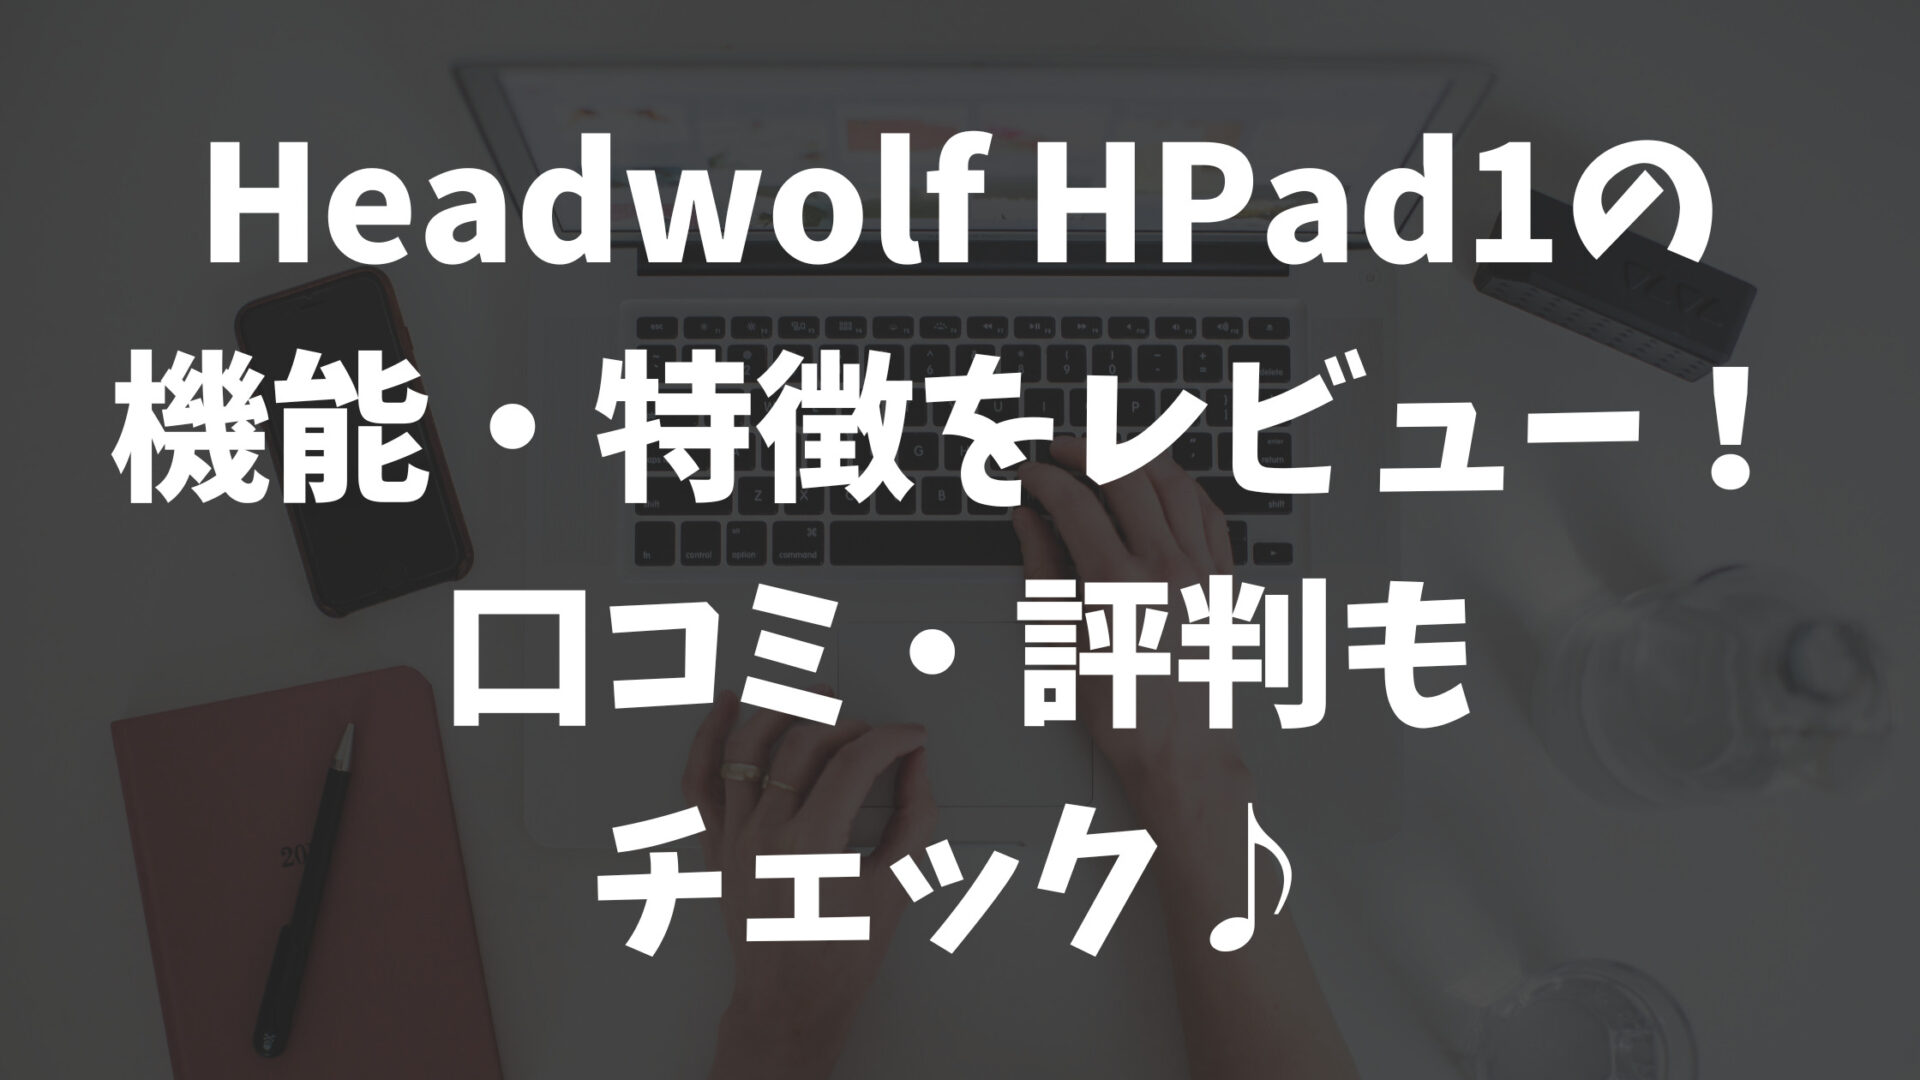 Headwolf FPad1の機能・性能をレビュー！口コミ・評判も調査♪ | あきざっき